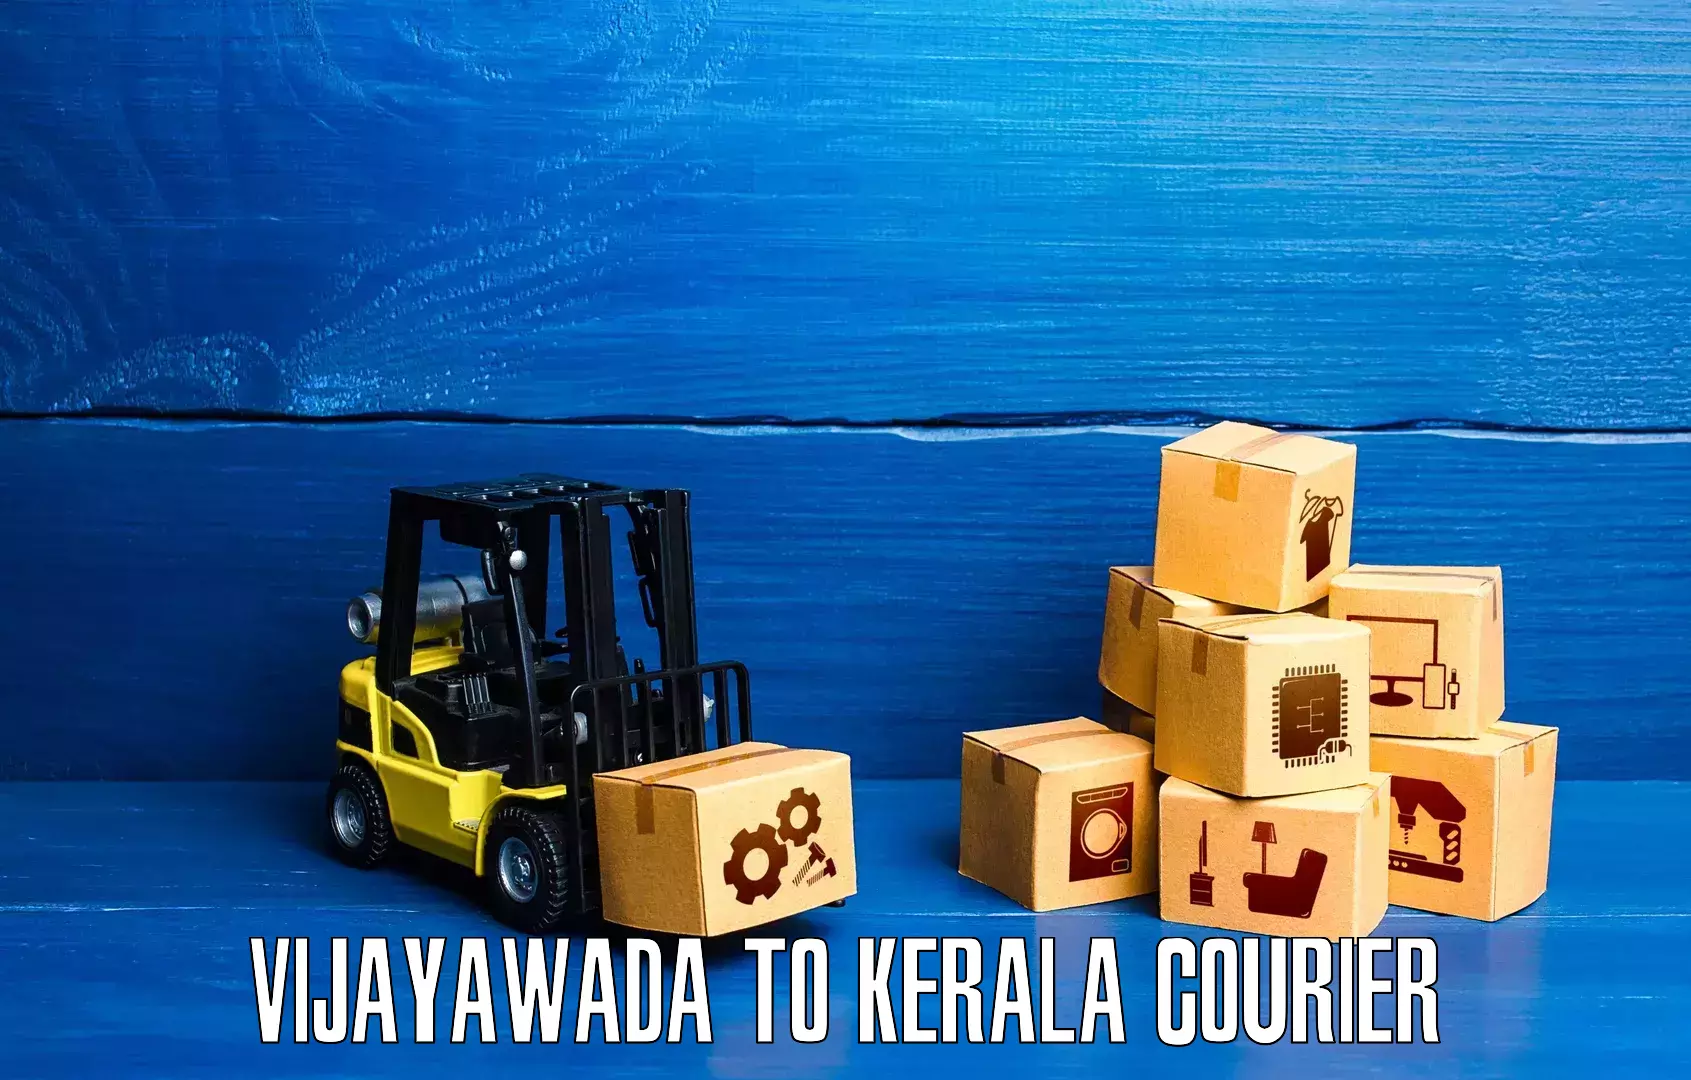 Courier service innovation Vijayawada to Kalluvathukkal